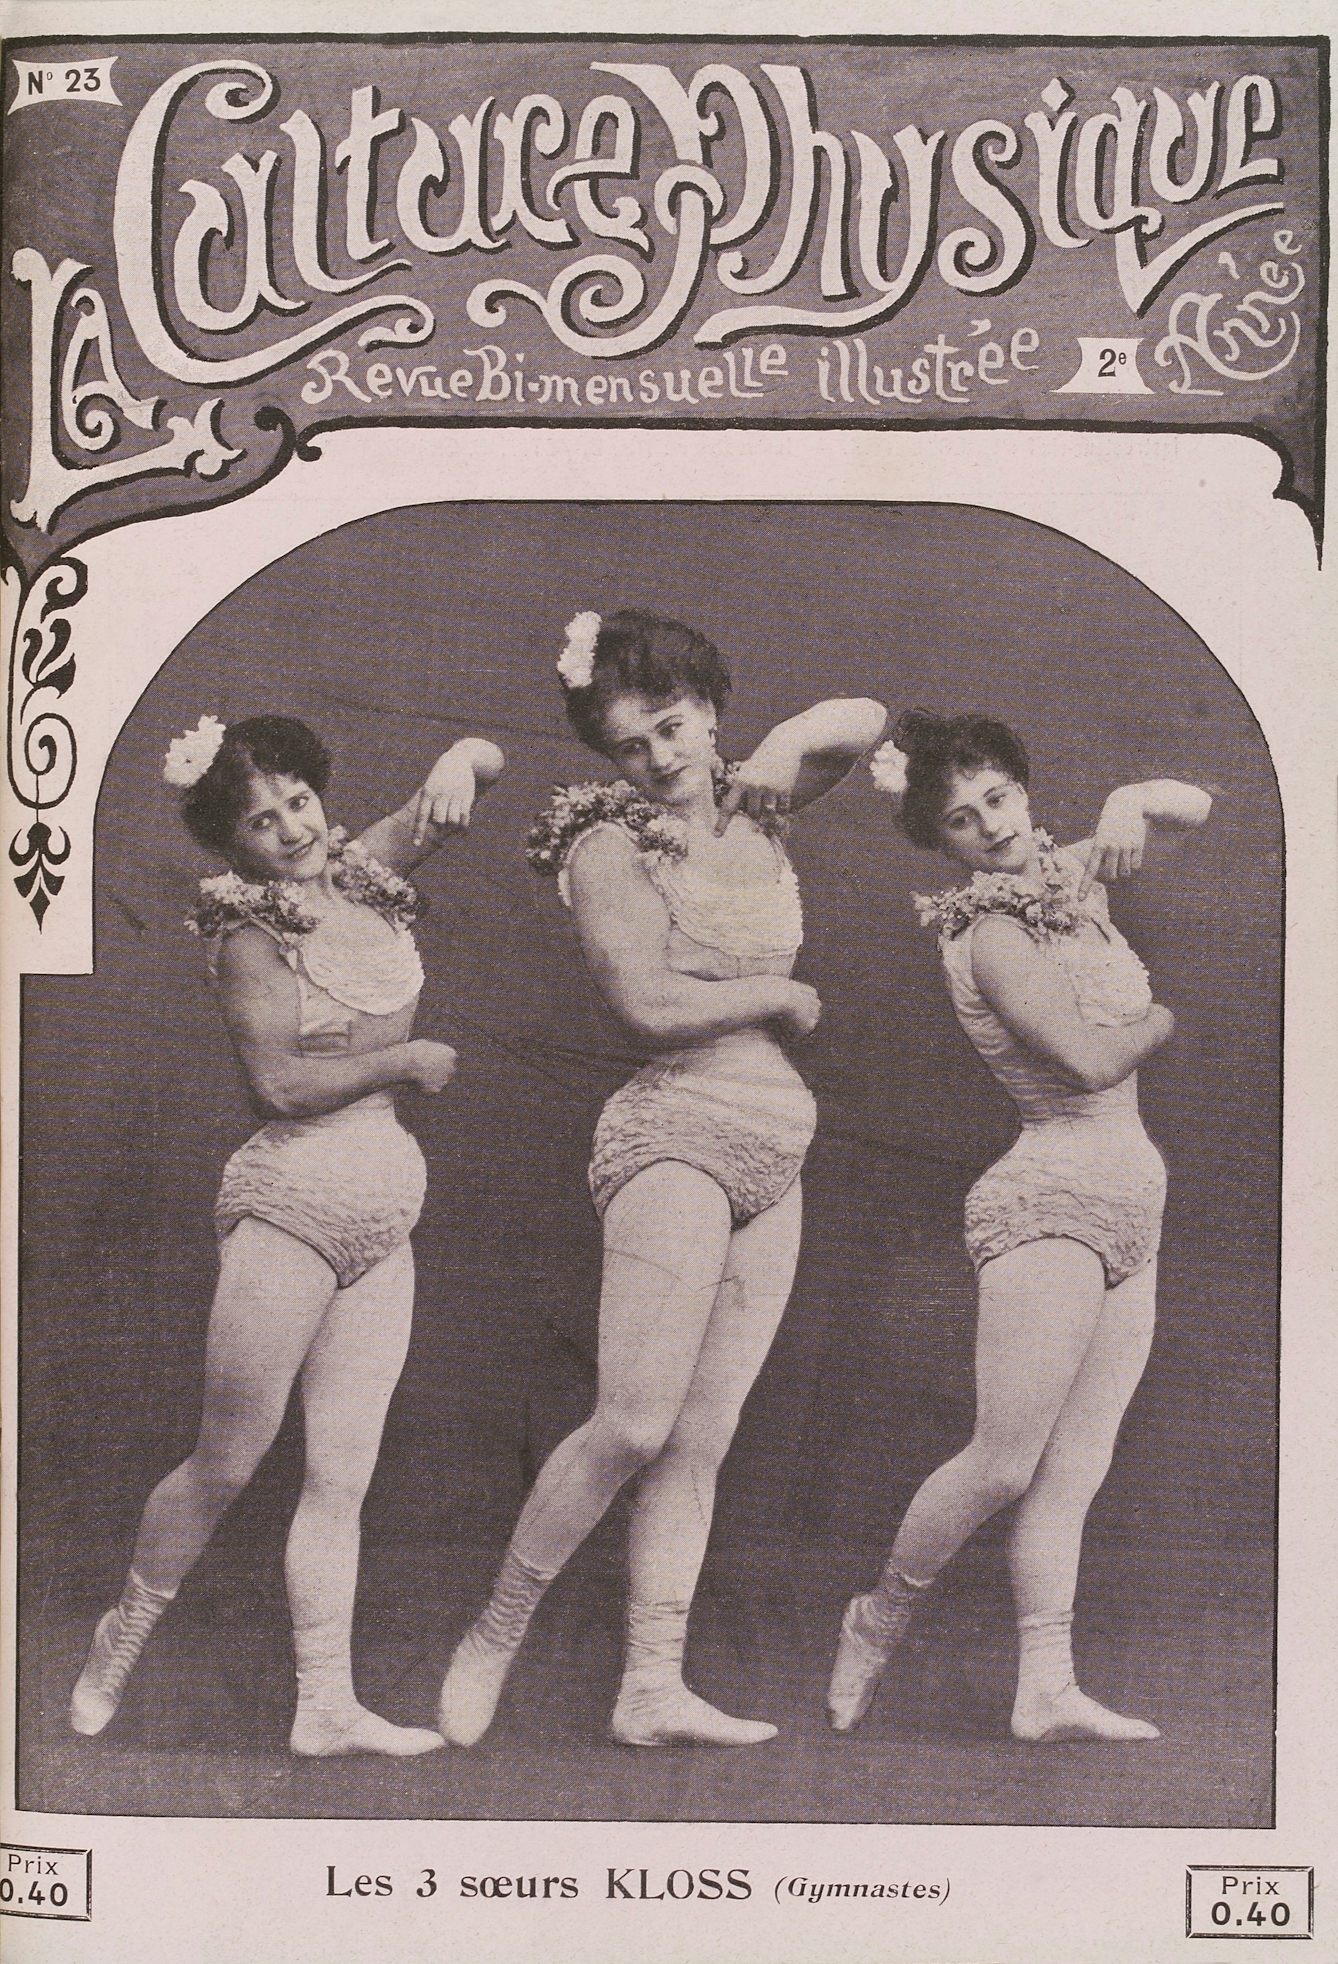 La Culture Physique, December 1905